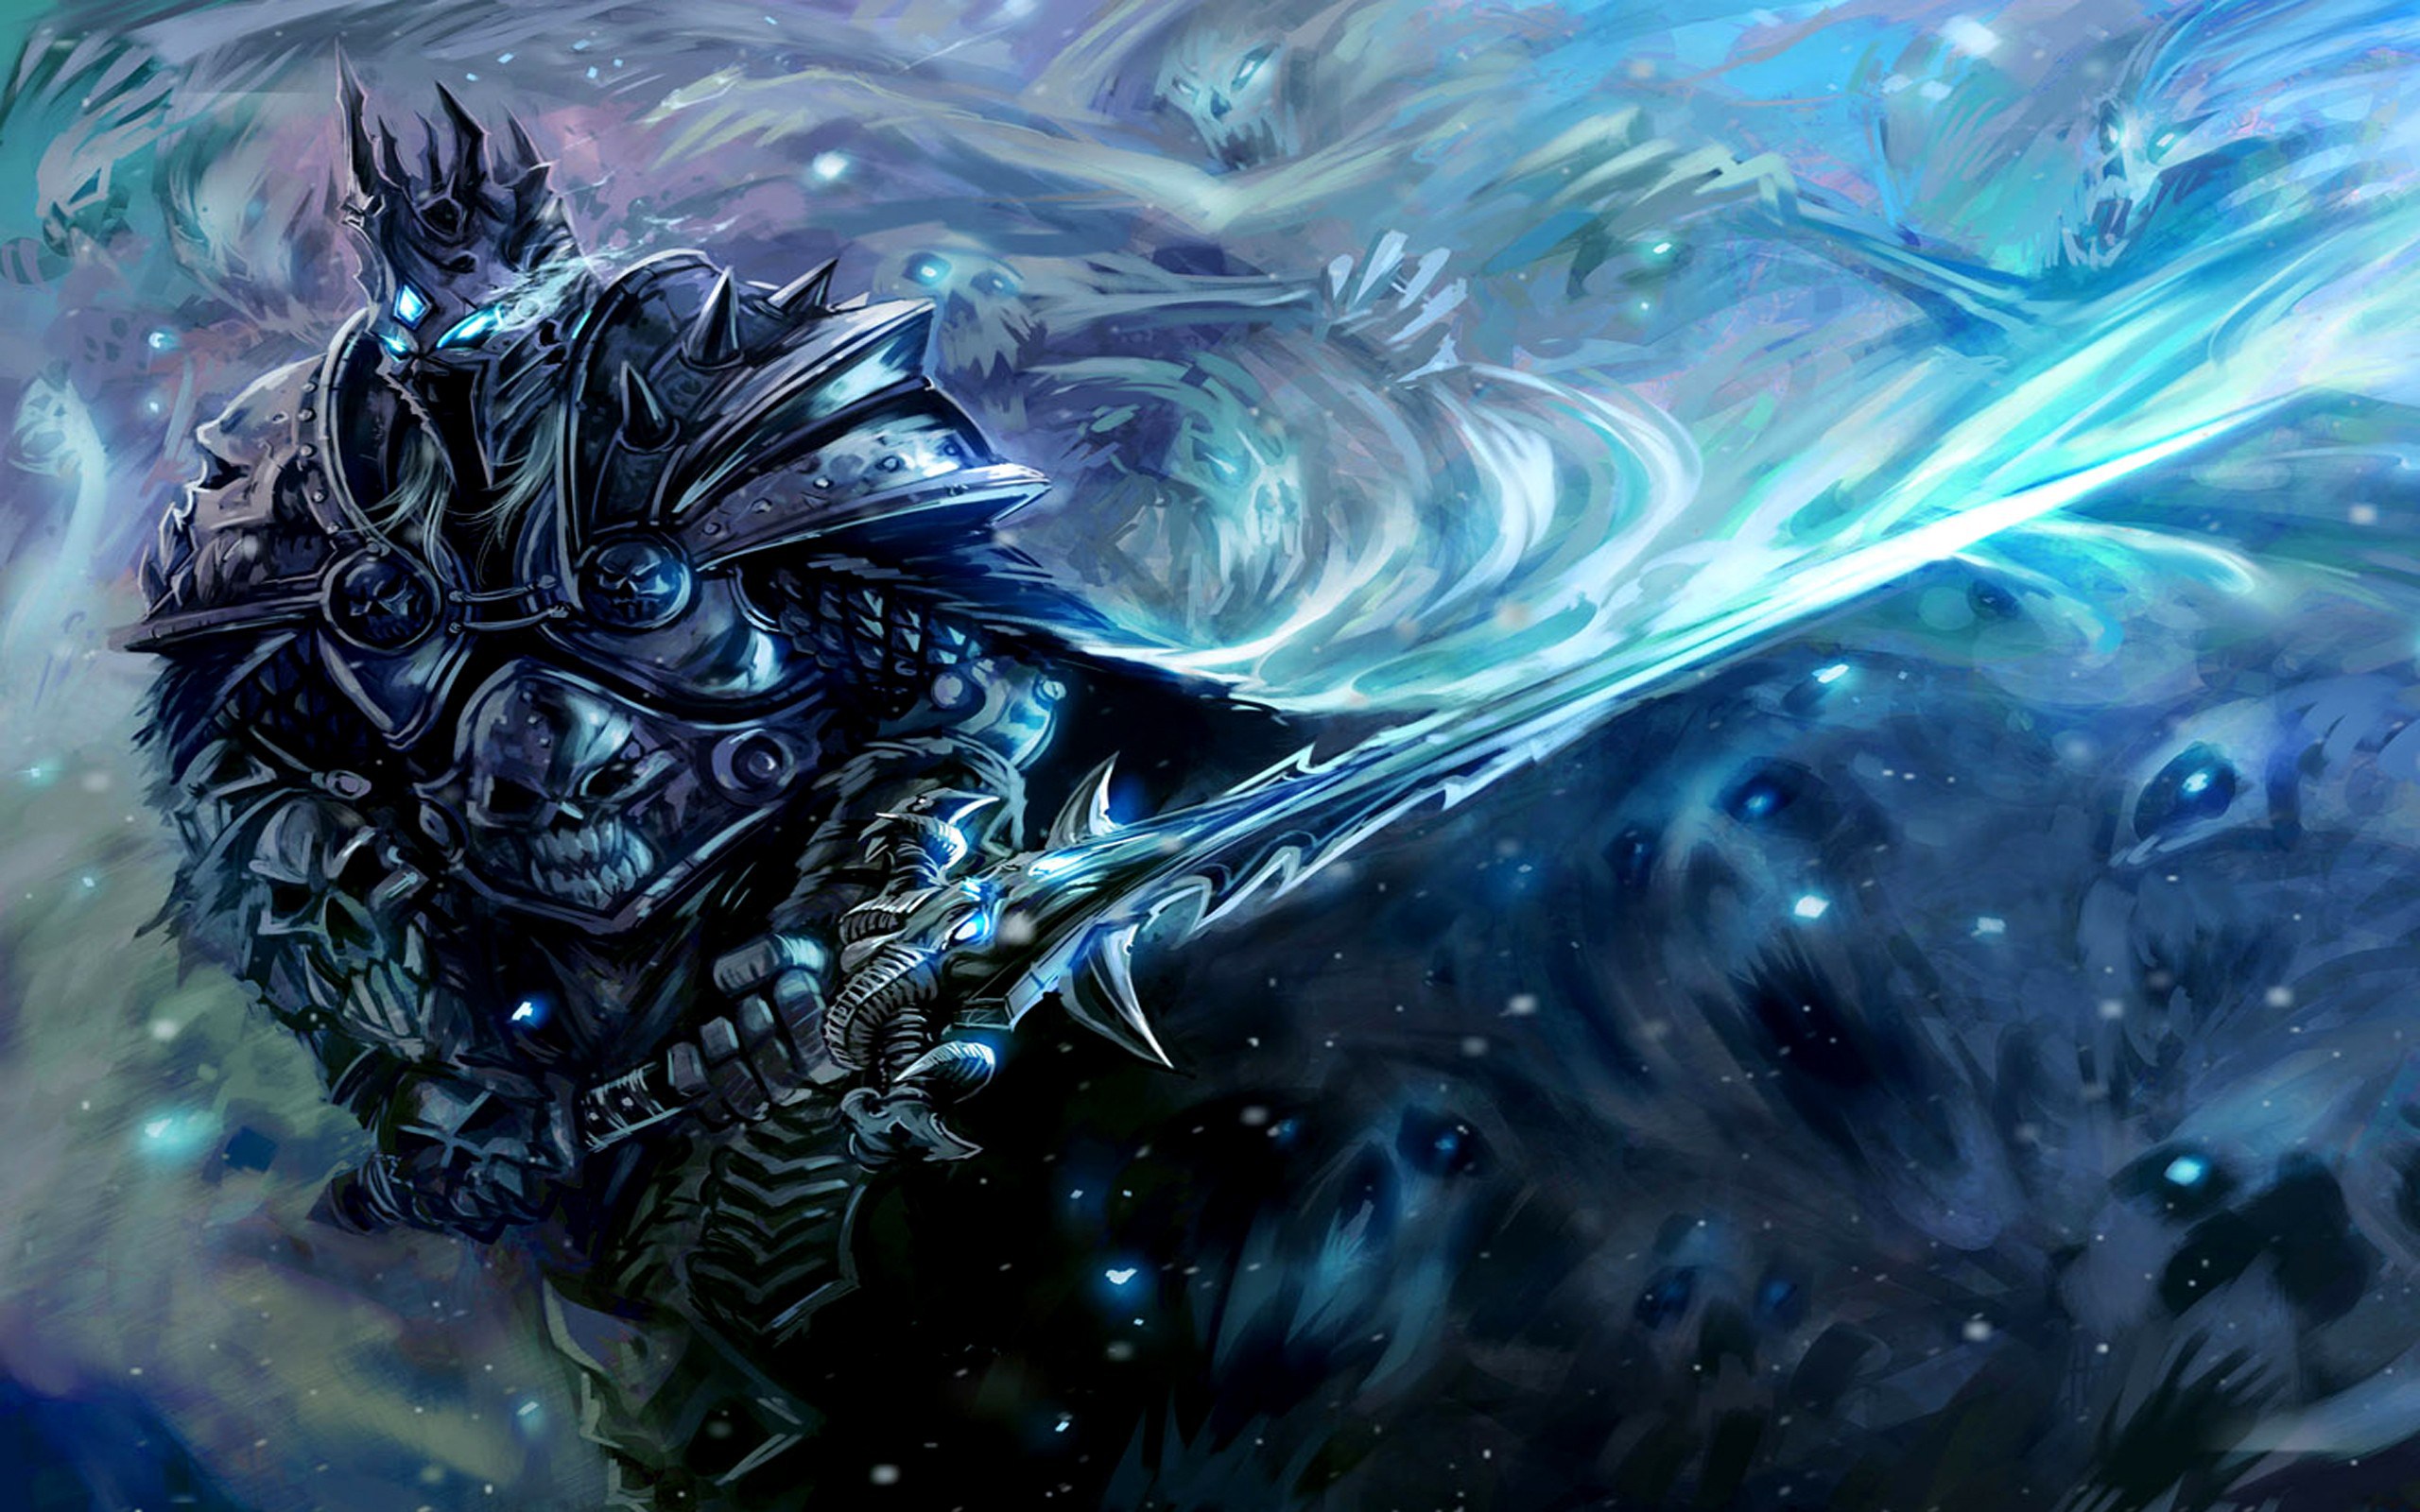 Arthas, Lich King, Arthas Menethil, World of Warcraft: Wrath of the Lich King, World of Warcraft, Warcraft, Video games Wallpaper